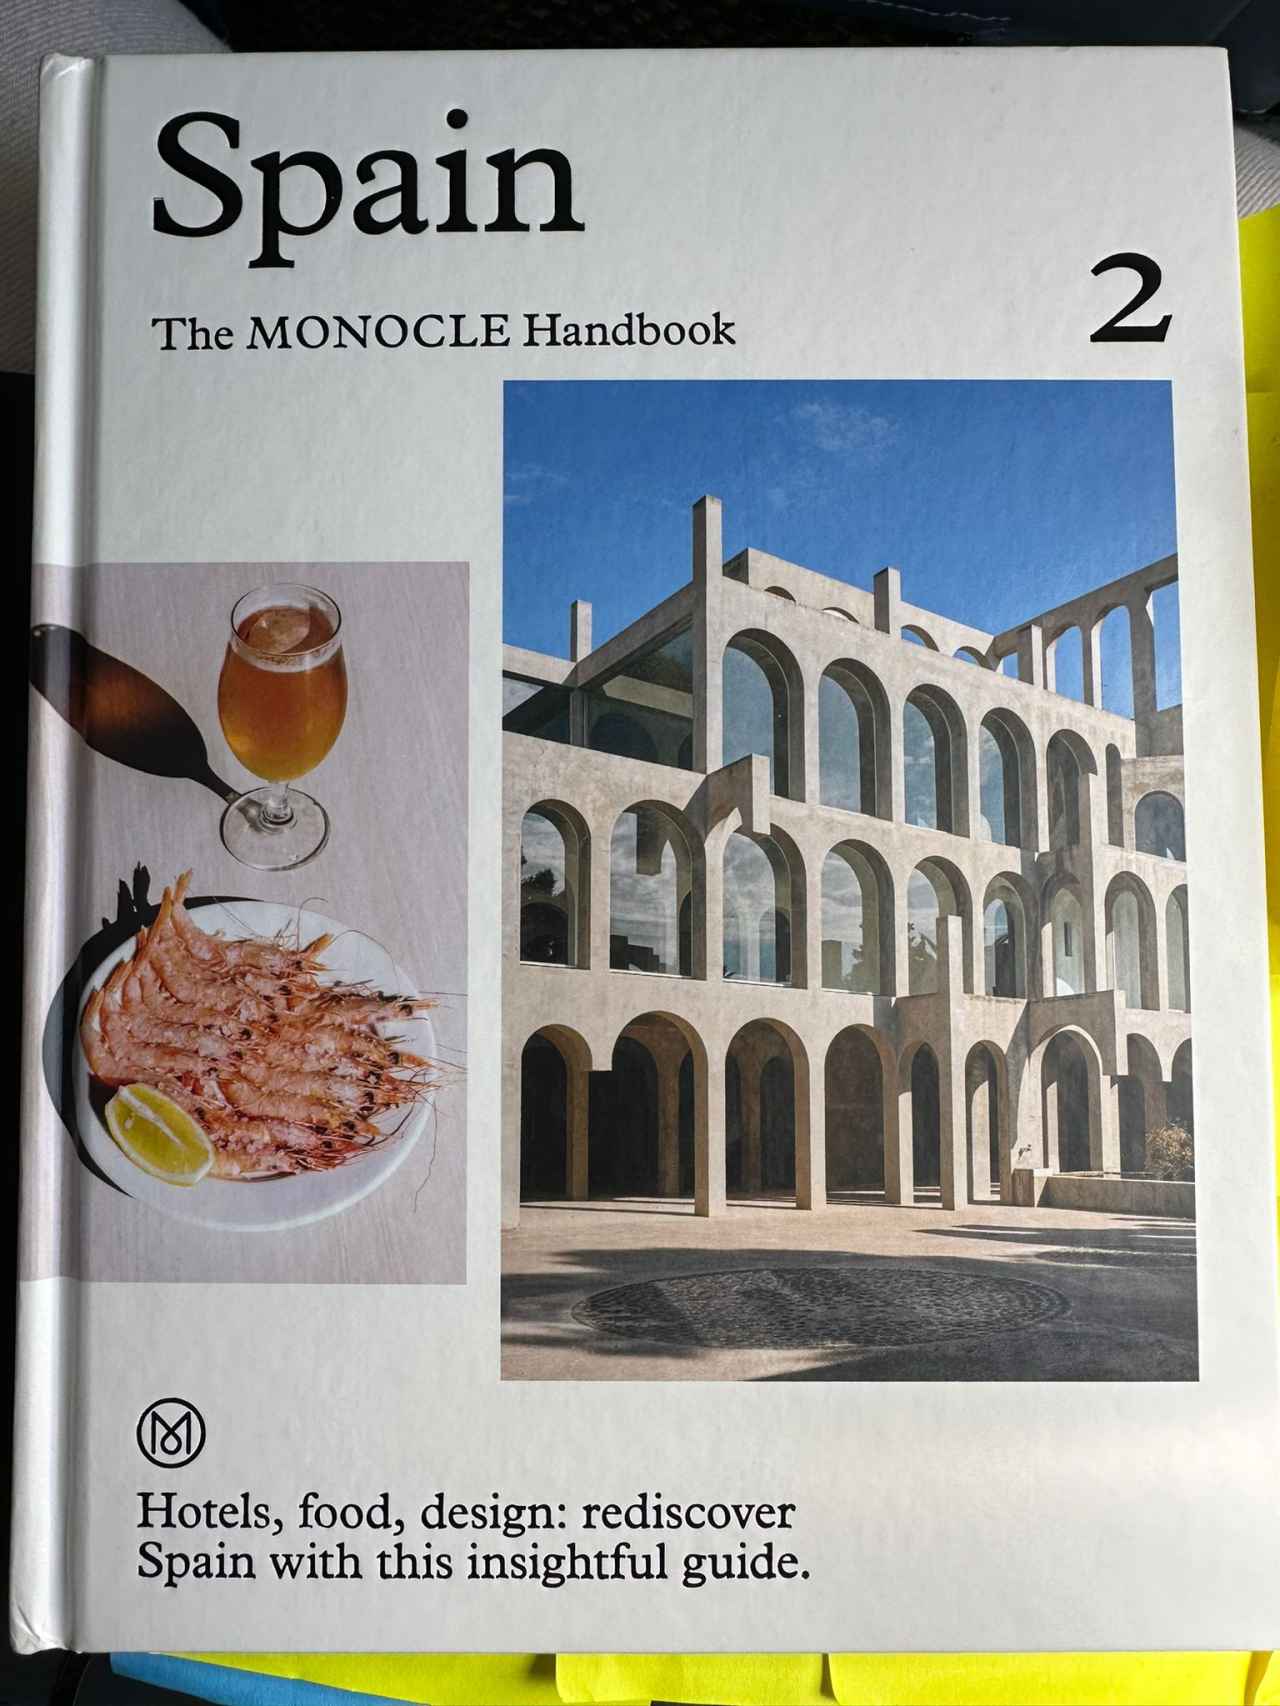 Gambas y arquitectura en la portada de la guía de 'Monocle'.